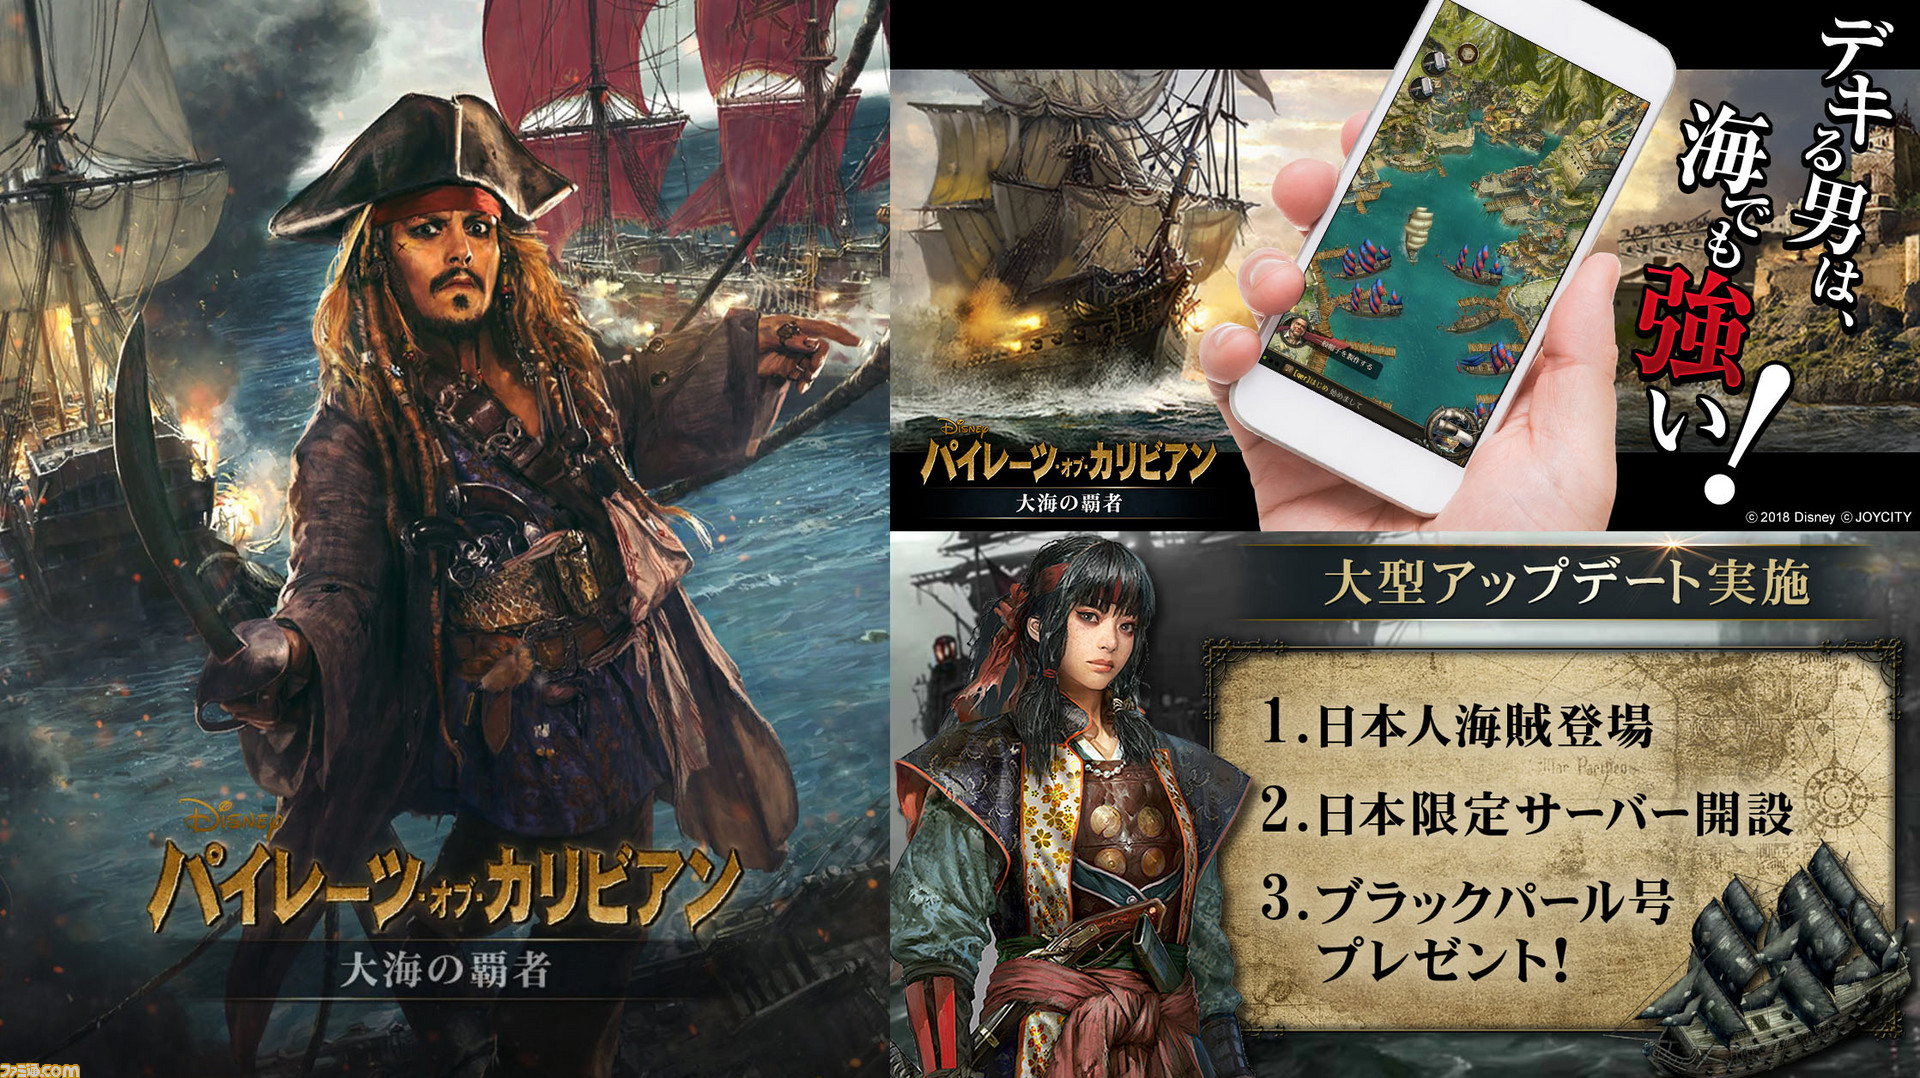 パイレーツ オブ カリビアン 大海の覇者 待望の日本向けサーバーで最強の海賊を目指せ Pr ファミ通 Com